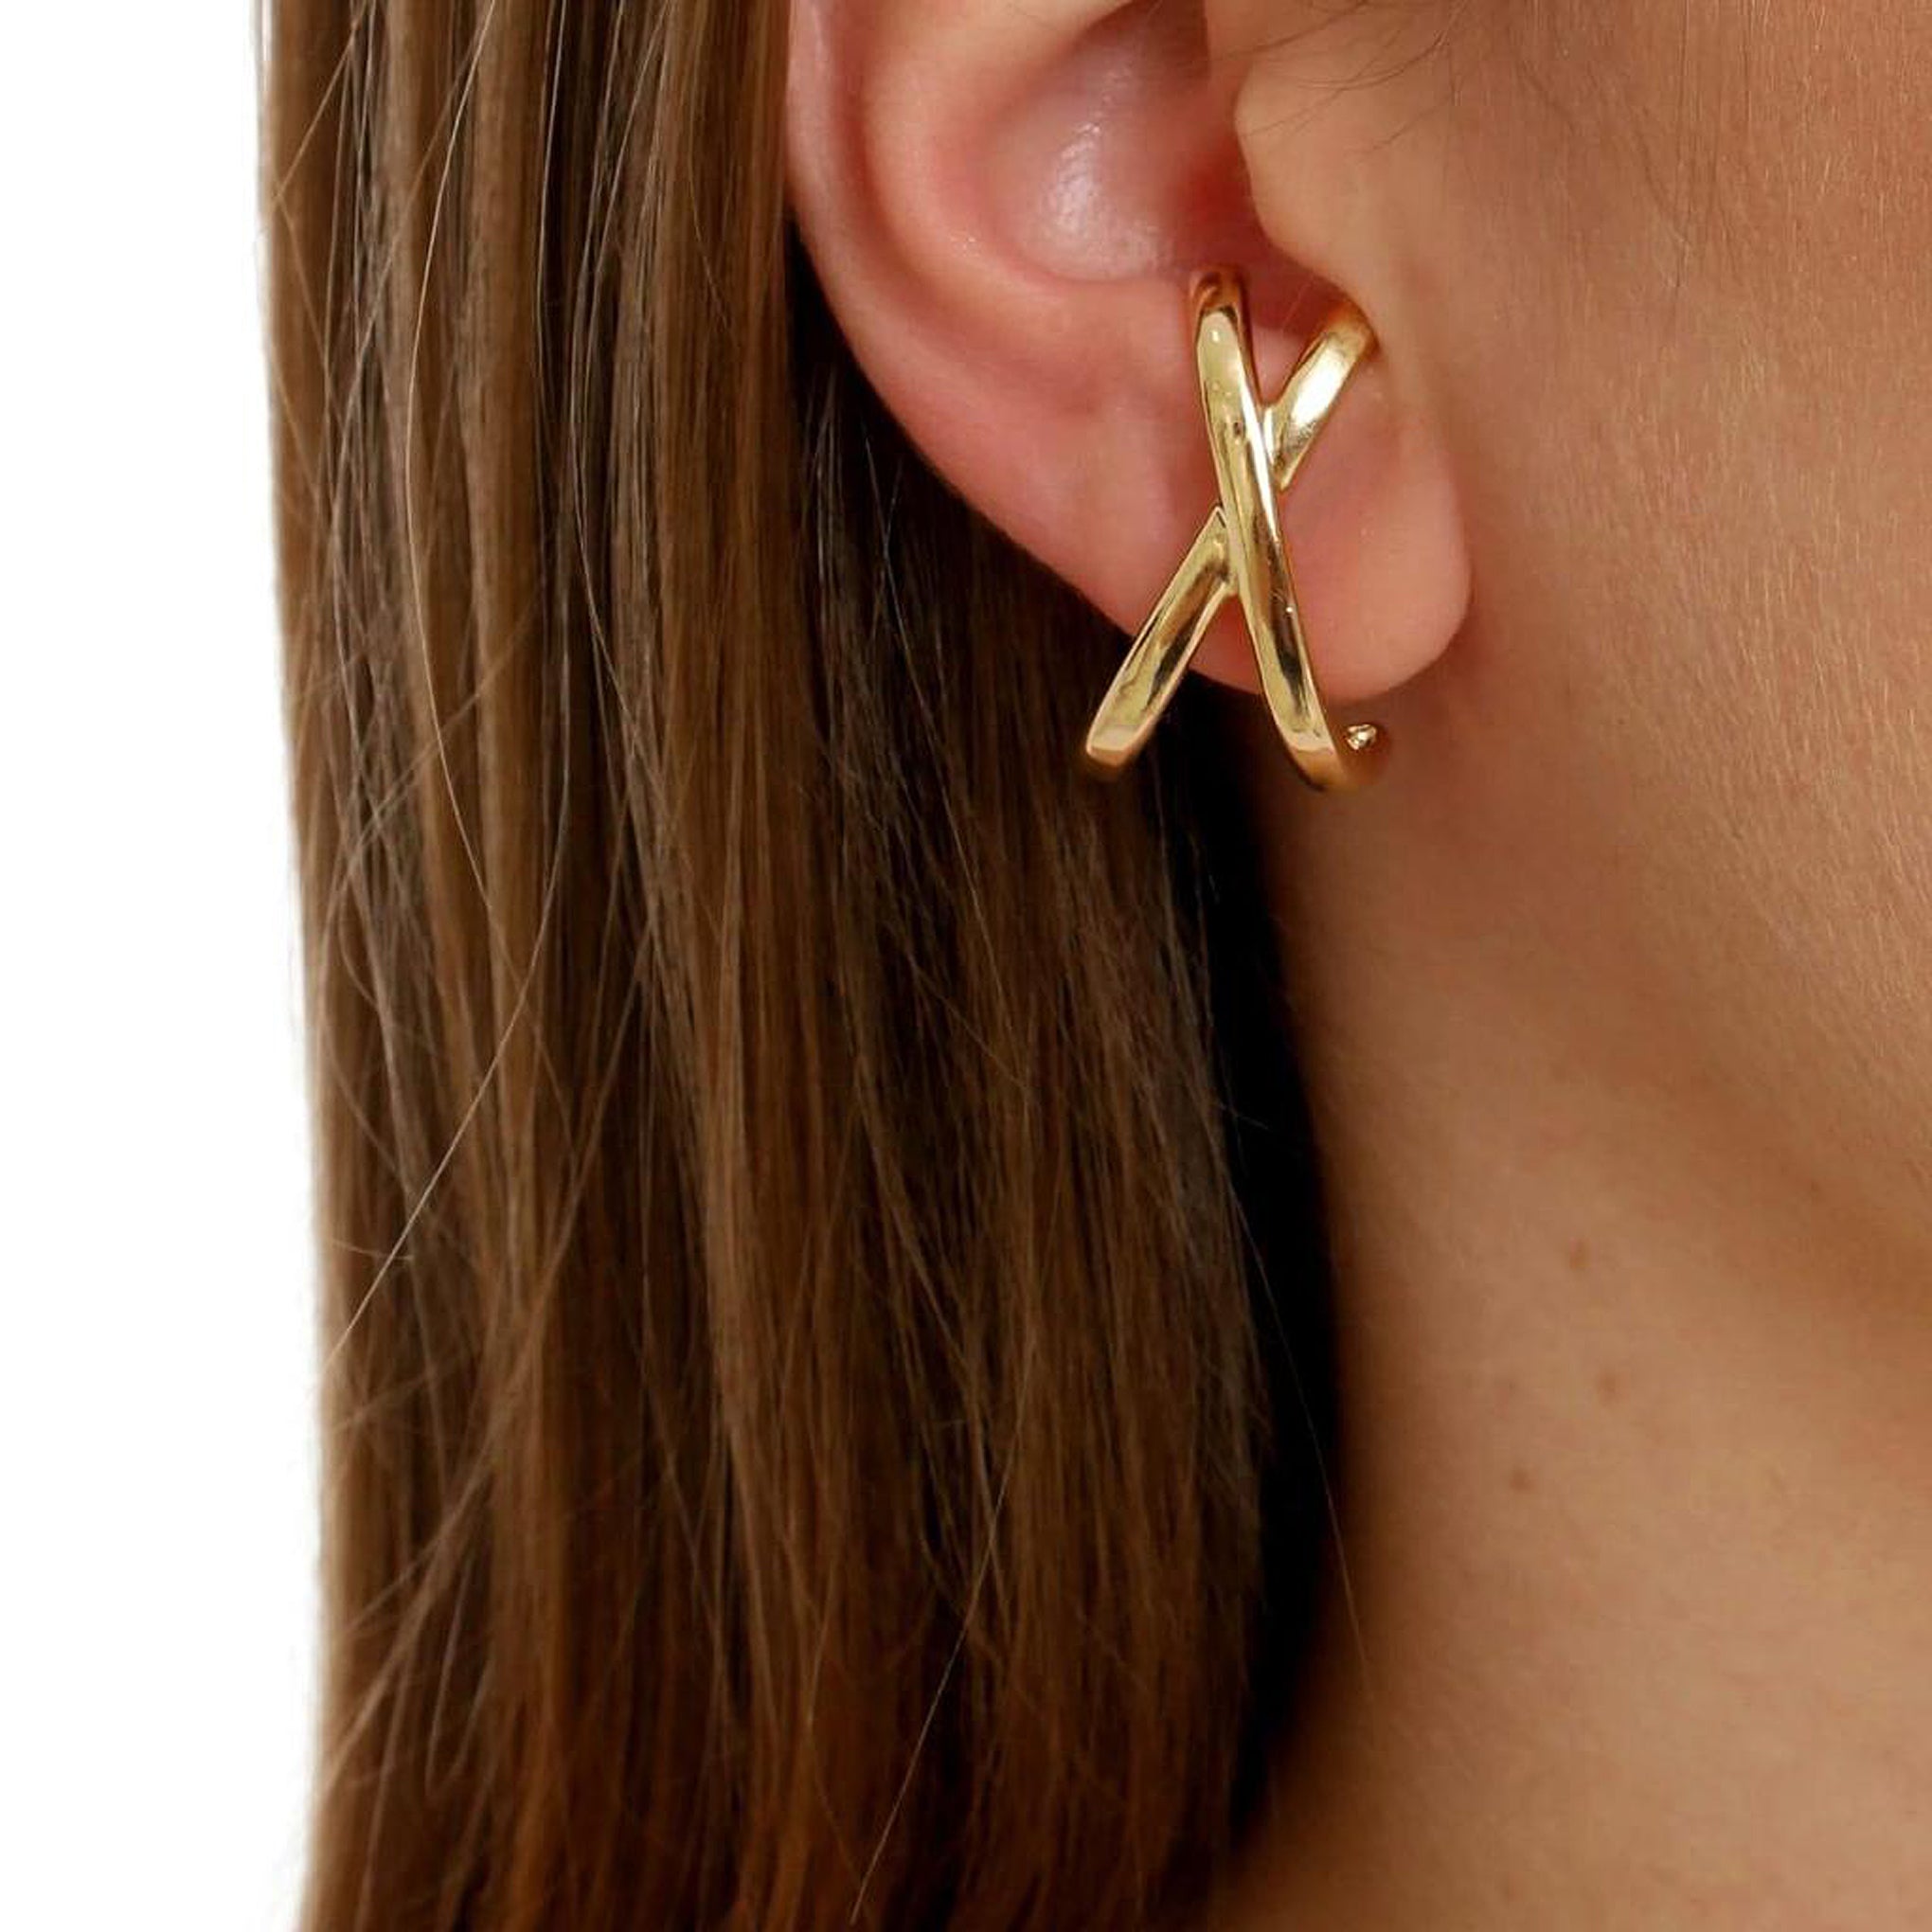 Sheila Fajl CrissCross Hug Ear Cuff Stud Earrings in Brushed Gold Plated